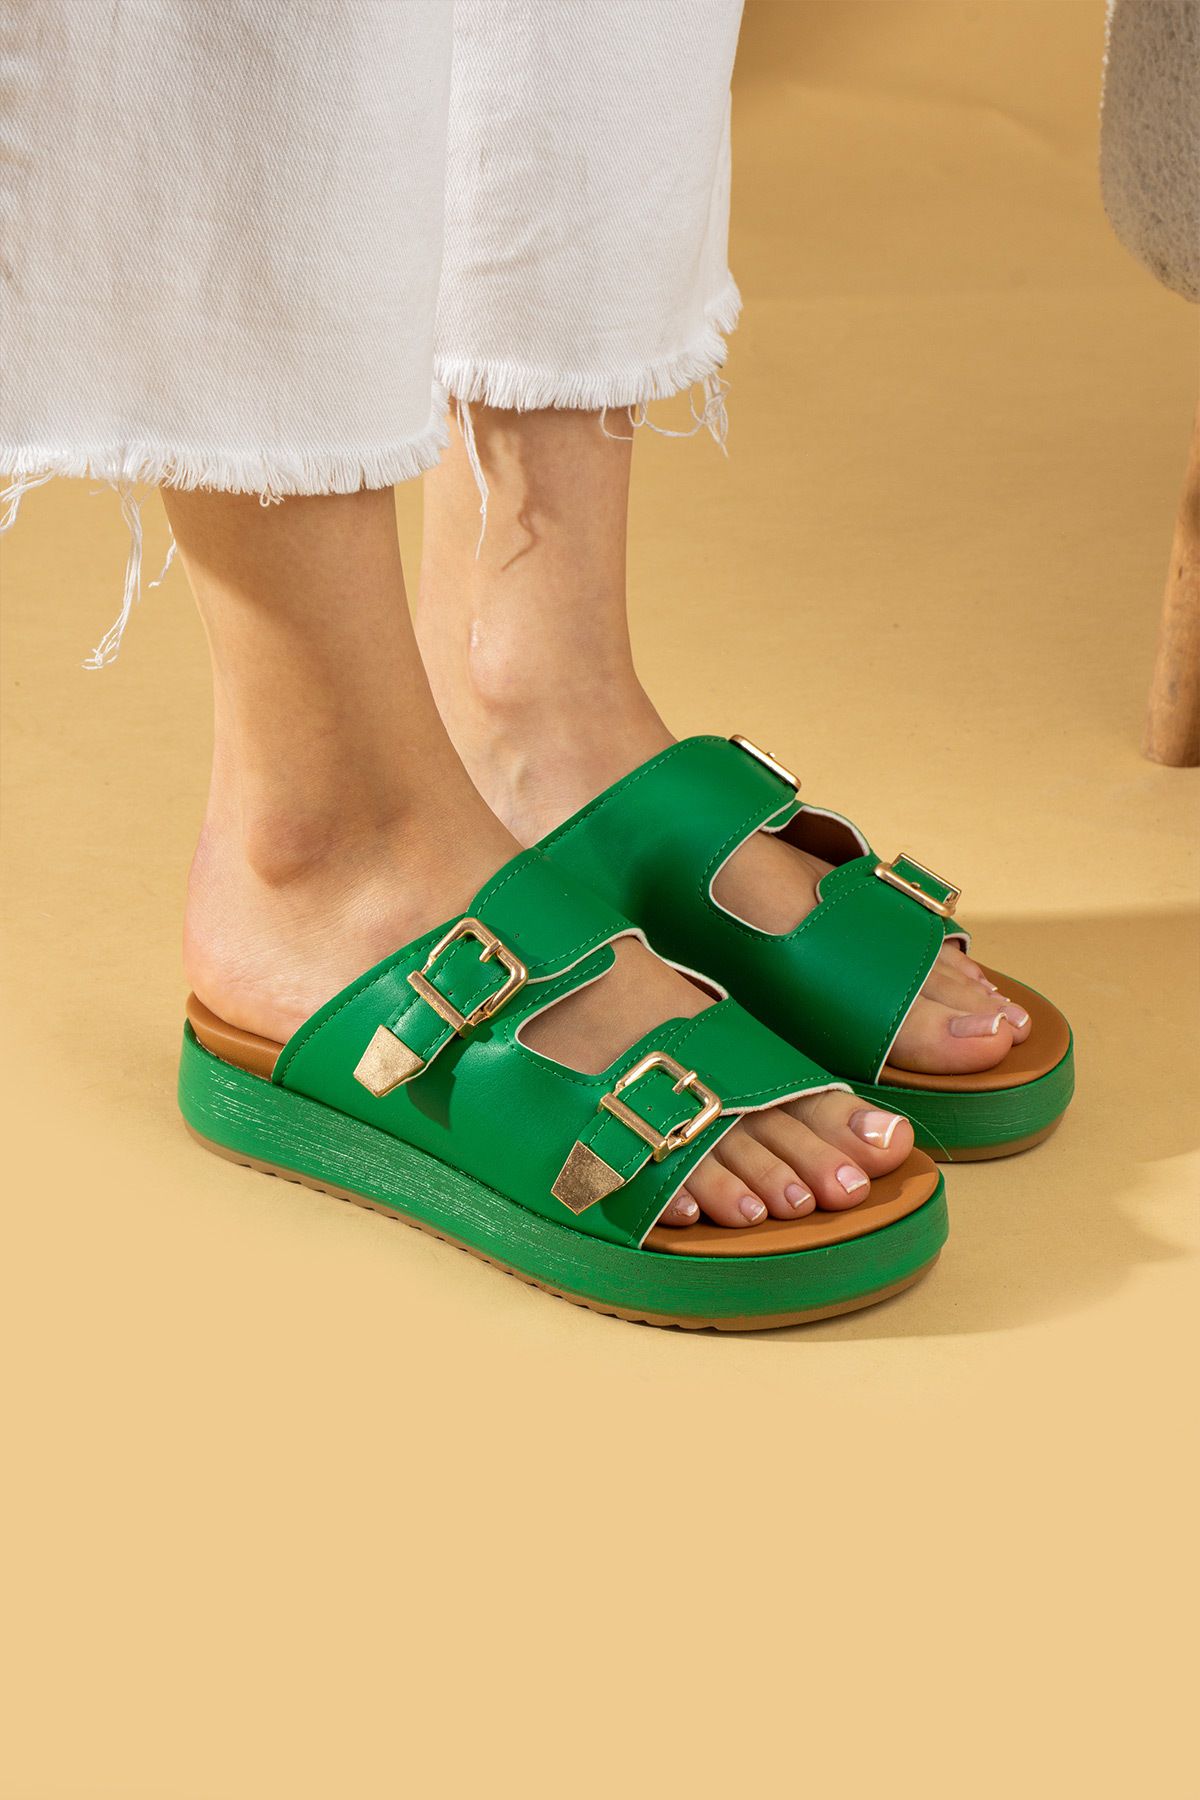 Pembe Potin Kadın Yeşil Çift Toka Poli Rahat Confort Taban Şık Tarz Terlik Sandalet